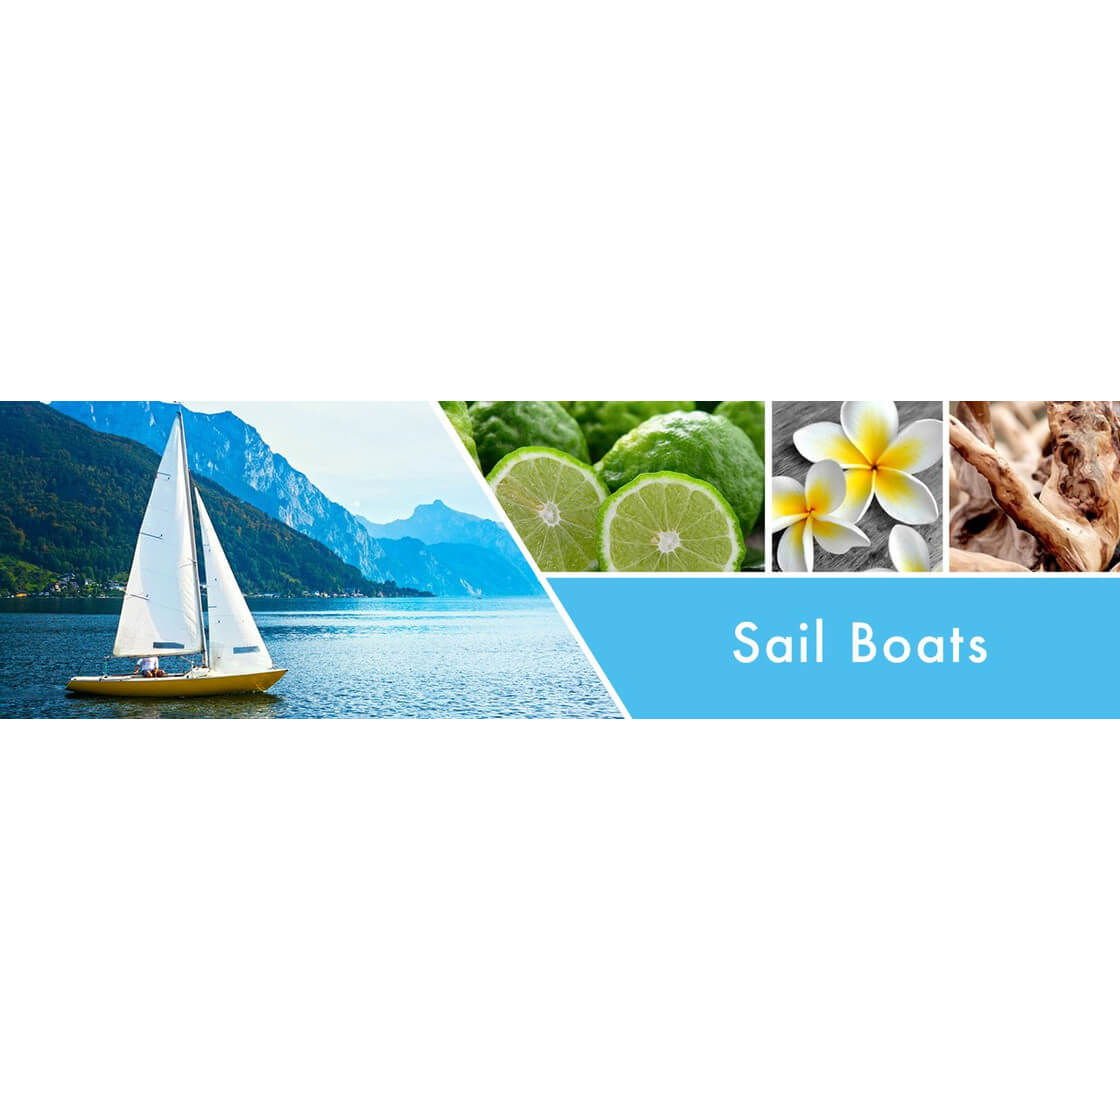 Sail Boats 680g